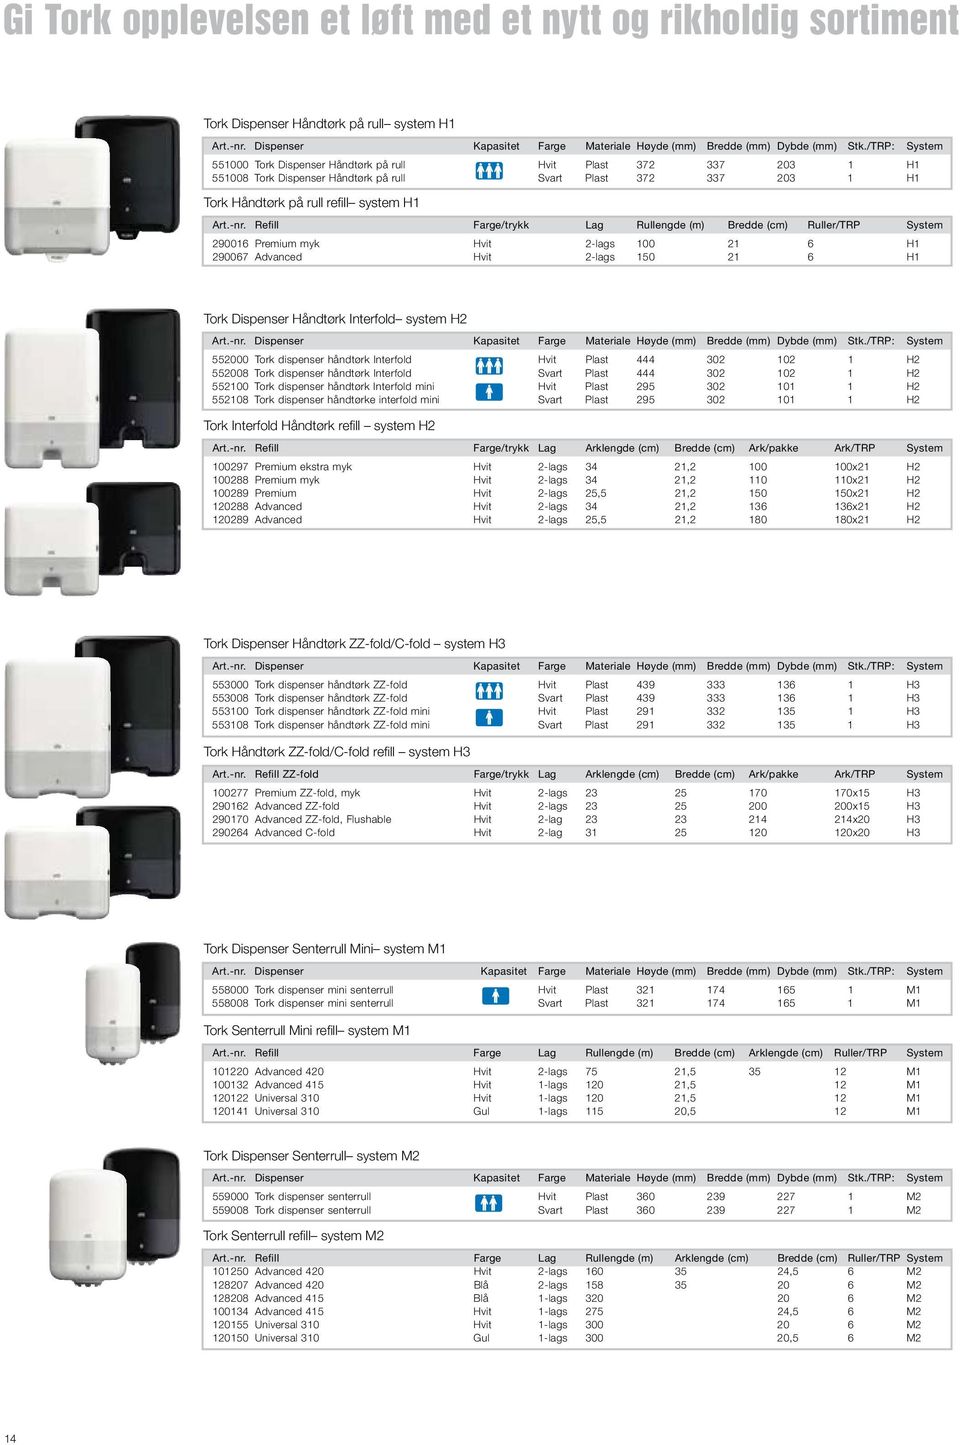 Refill Farge/trykk Lag Rullengde (m) Bredde (cm) Ruller/TRP System 290016 Premium myk Hvit 2-lags 100 21 6 H1 290067 Advanced Hvit 2-lags 150 21 6 H1 Tork Dispenser Håndtørk Interfold system H2